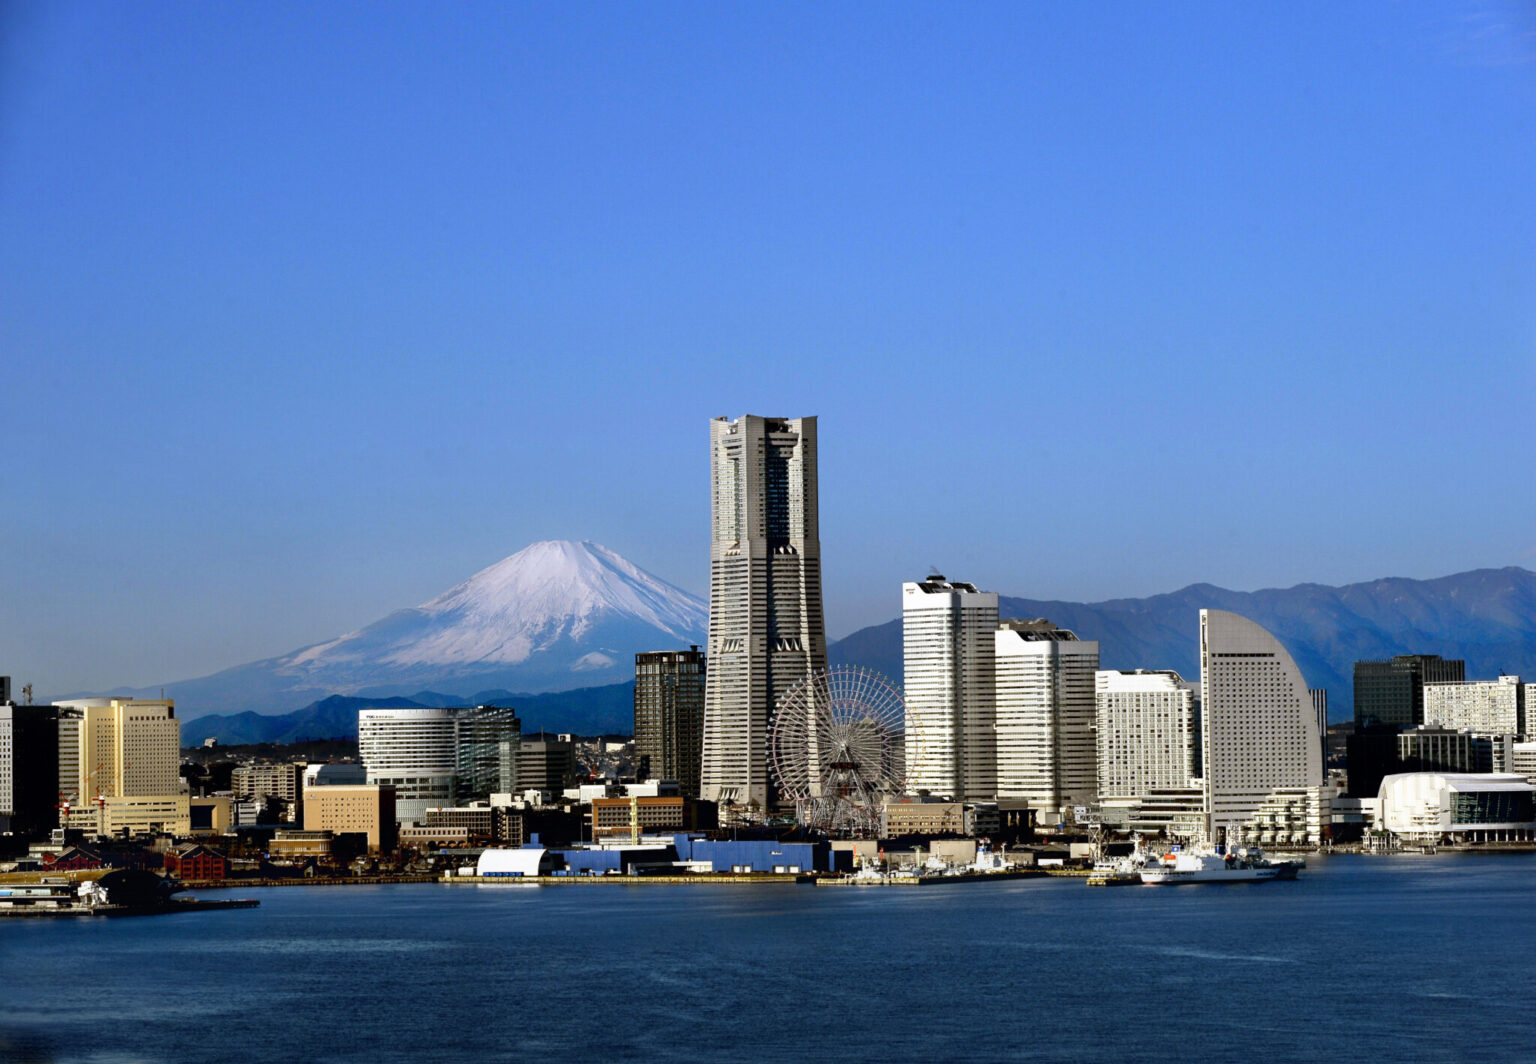 写真内で一番高いビルが〈横浜ランドマークタワー〉。